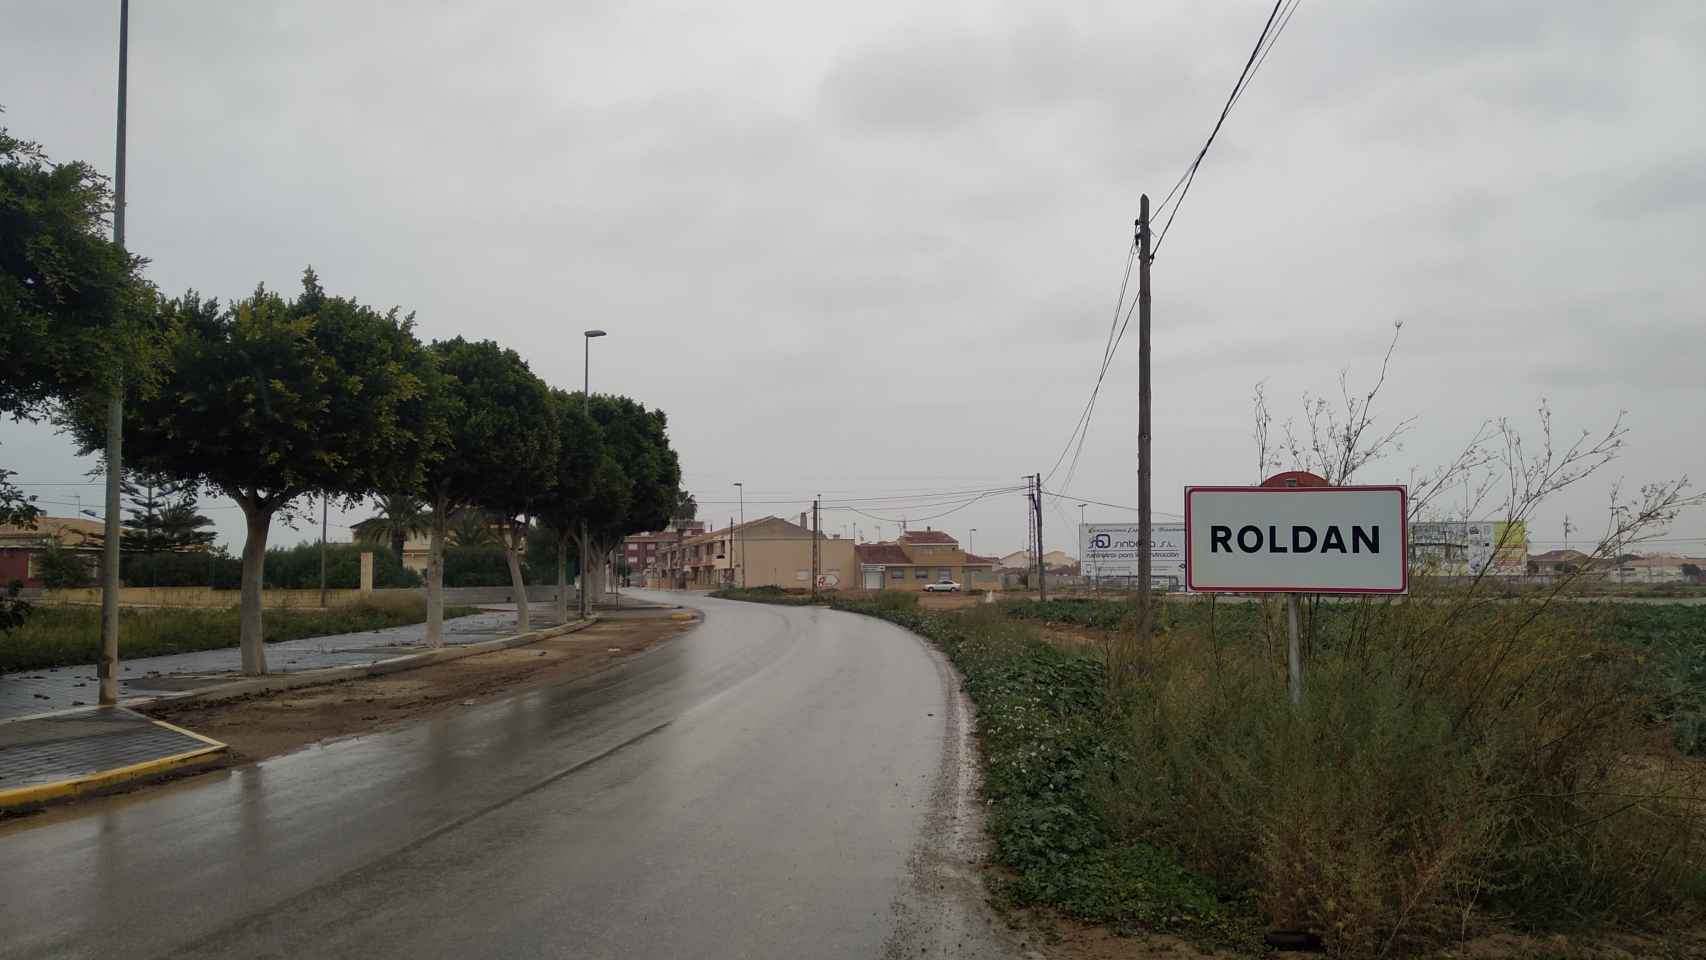 Cartel que anuncia a los forasteros que están en Roldán, una pedanía perteneciente al término municipal de Torre Pacheco.